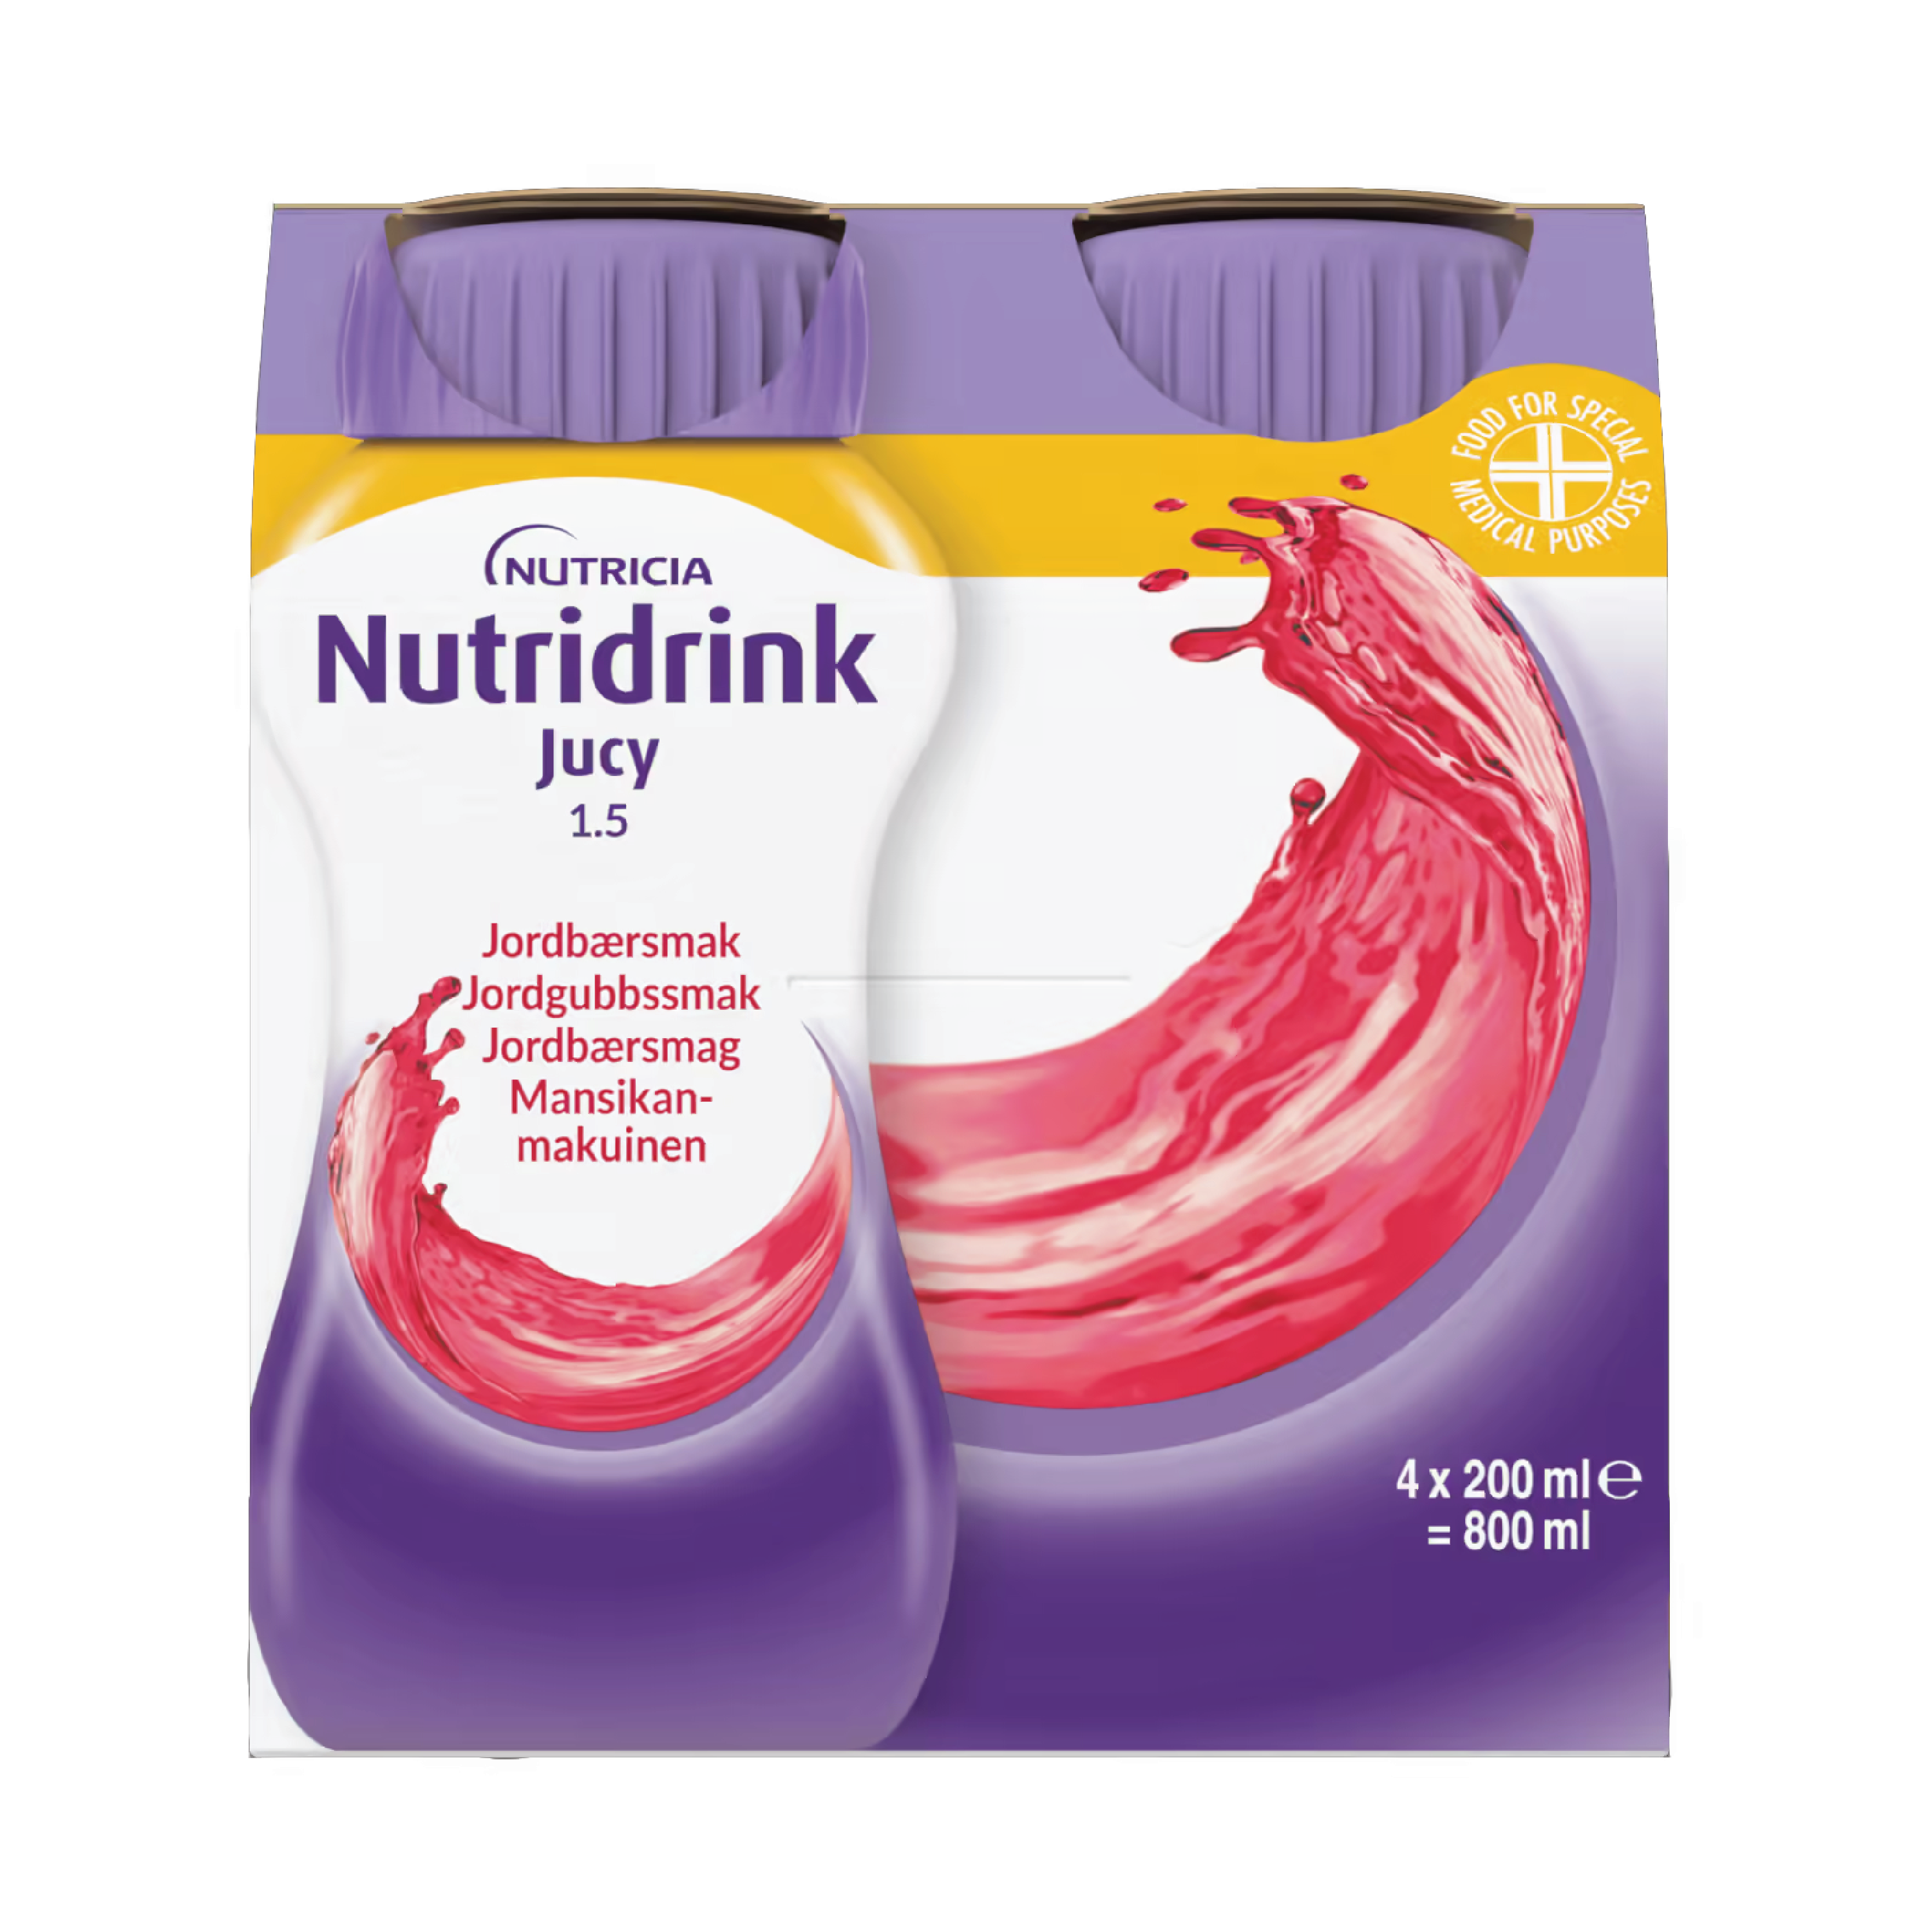 Nutridrink Jucy Næringsdrikk, Jordbær, 4x200 ml